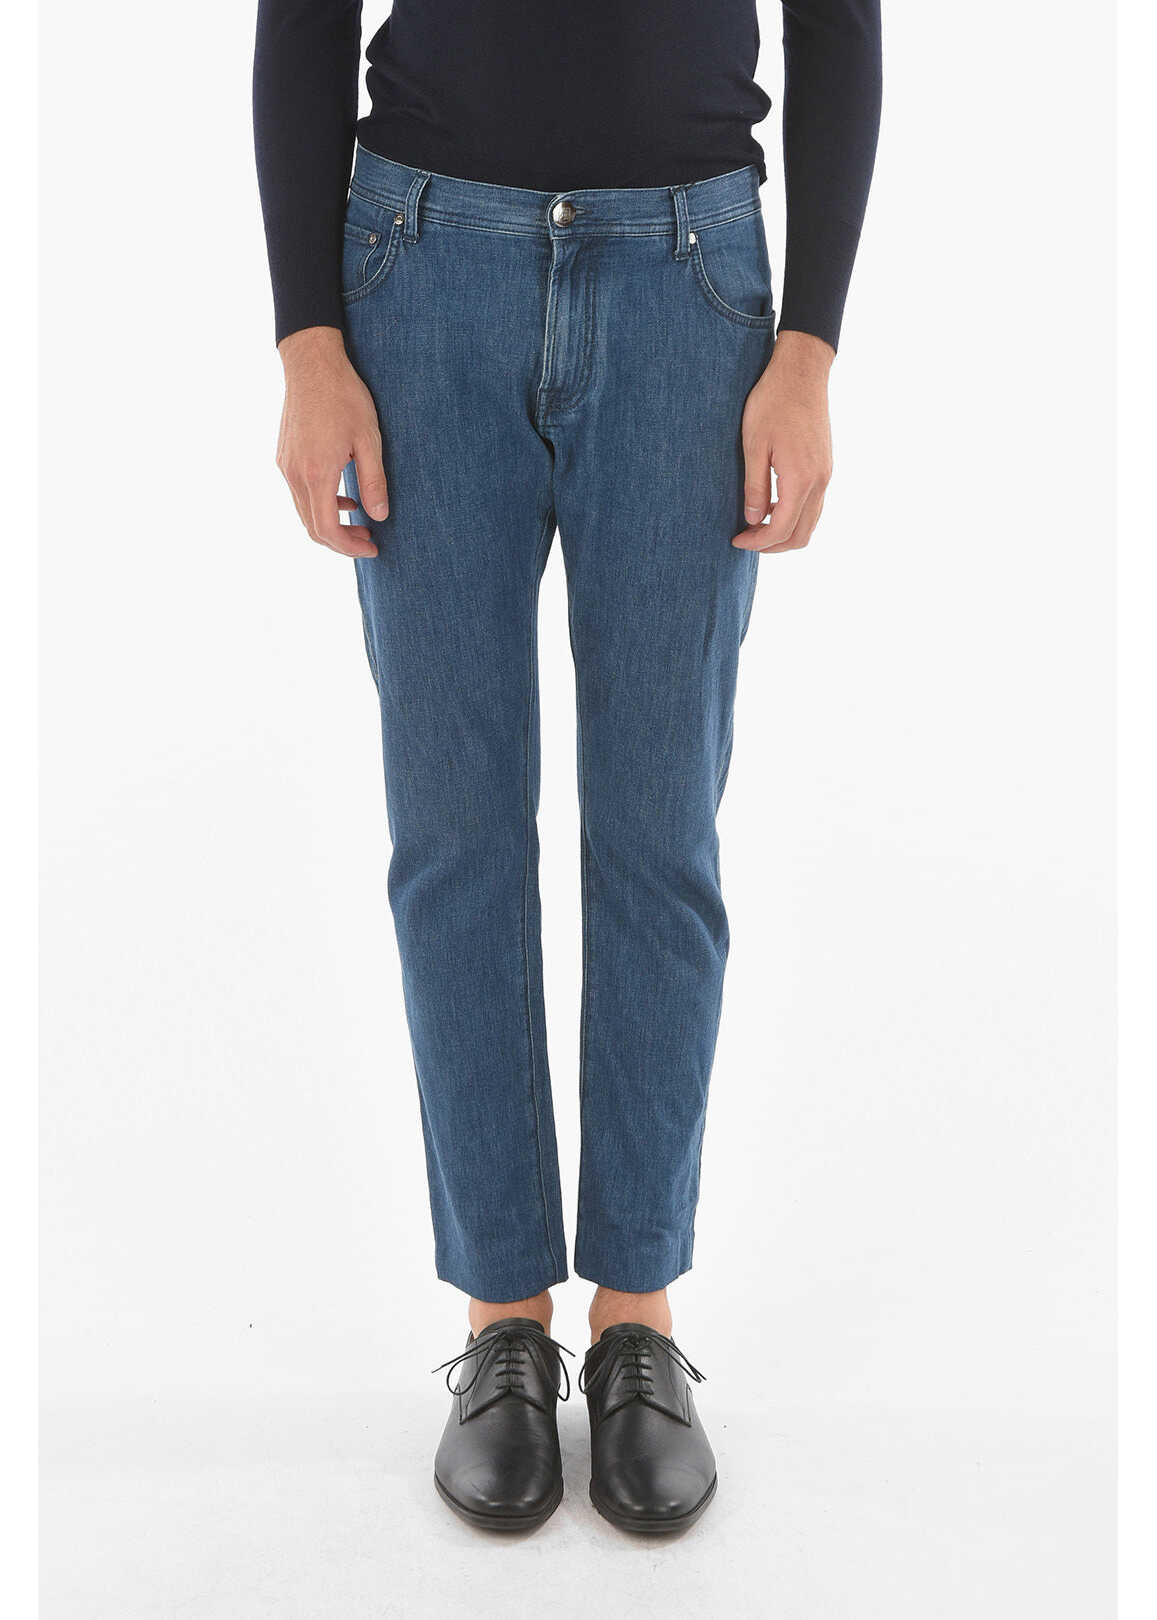 CORNELIANI Id Stretchy Denim Mid-Wash Jeans With 5 Pockets 19Cm Blue